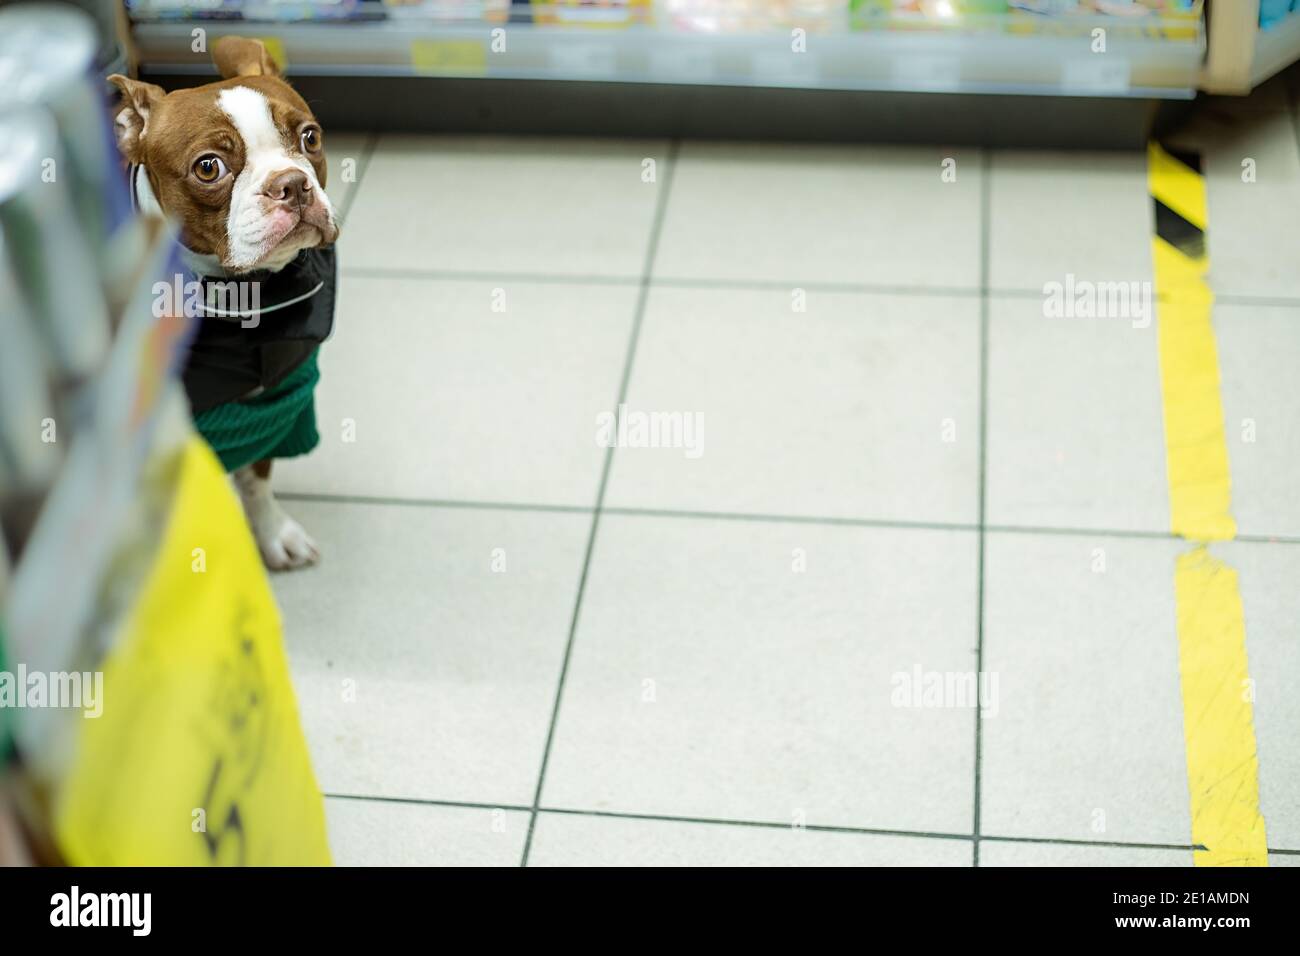 Il cane purebred in negozio sbircia fuori da dietro le mensole come ladro piccolo. Foto stile di vita in negozio Foto Stock